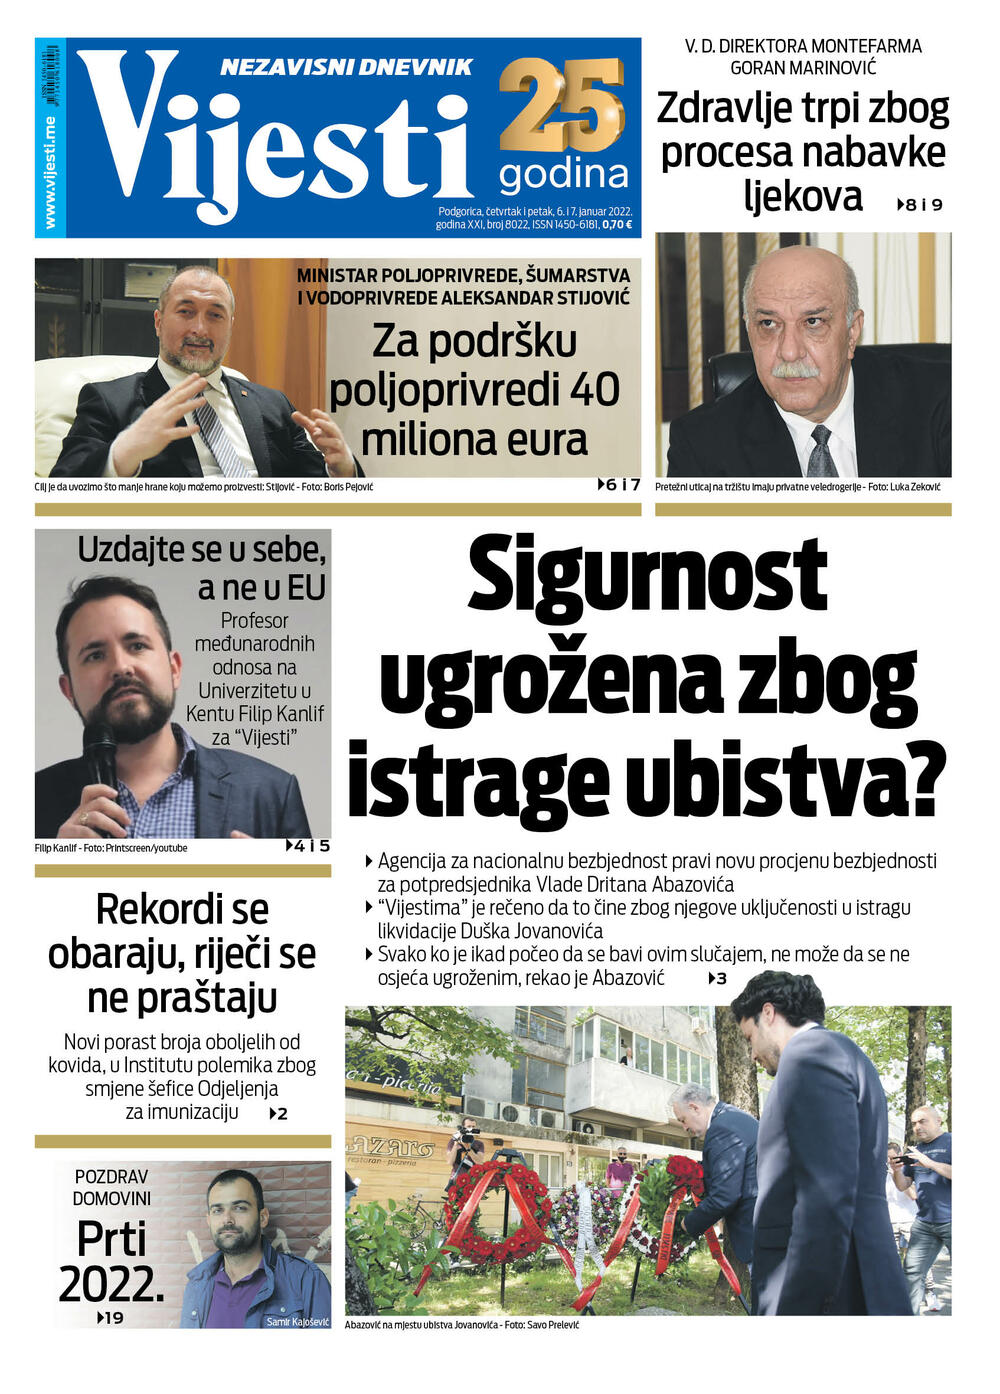 Naslovna strana "Vijesti" za 6. i 7. januar 2022., Foto: Vijesti